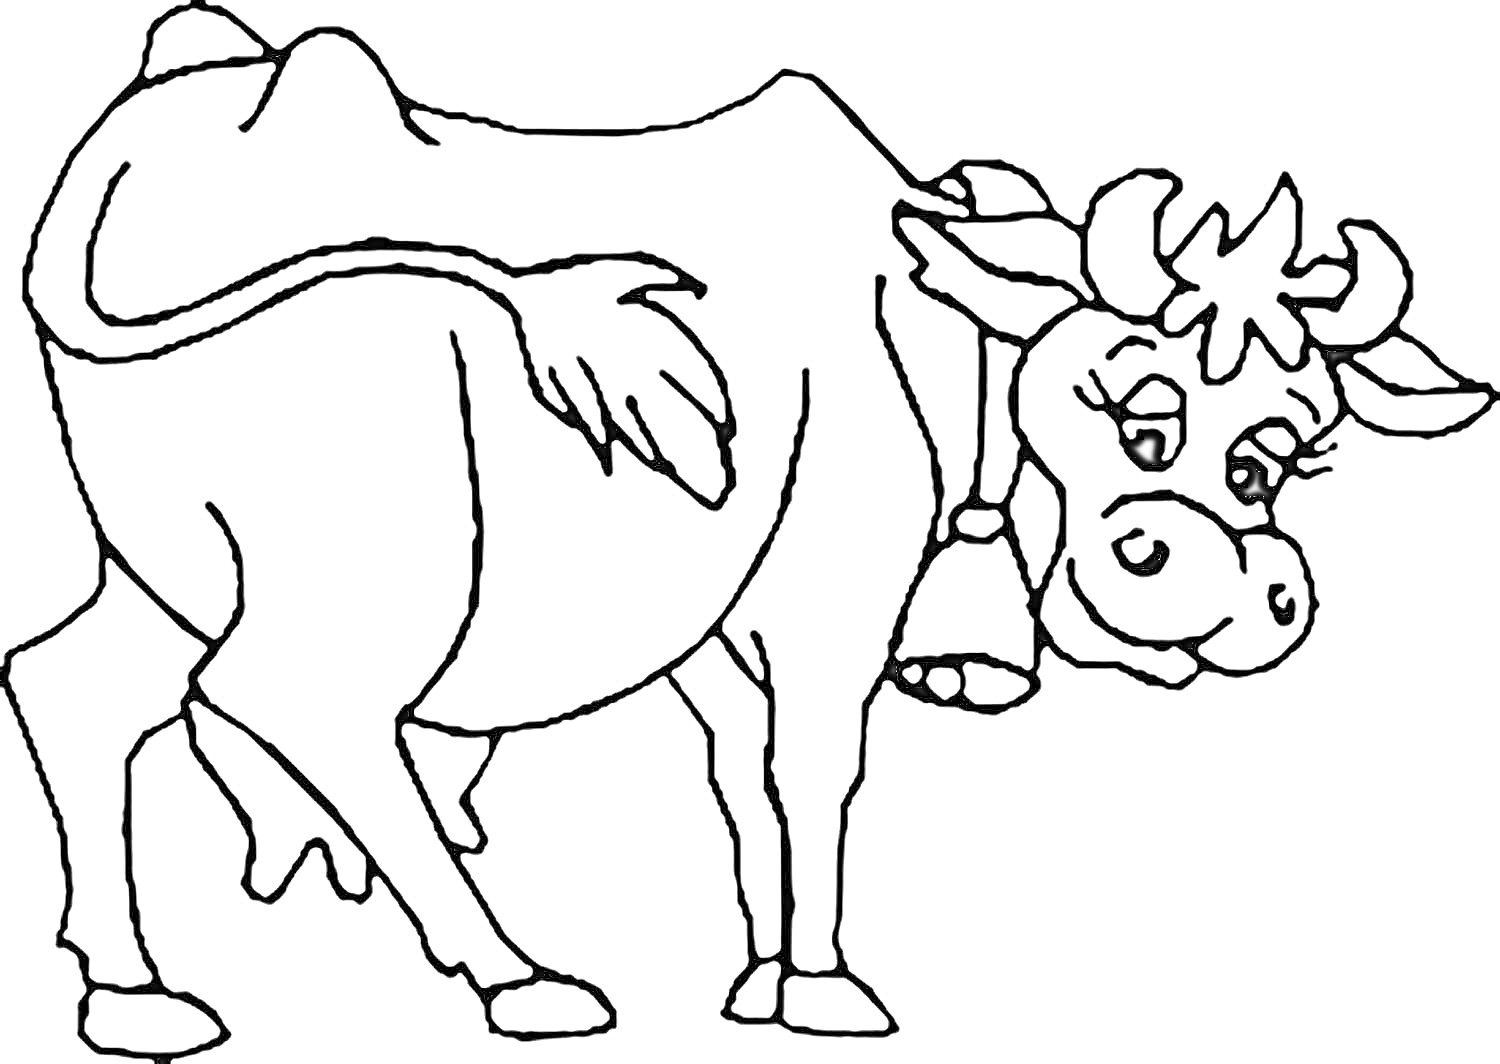 Раскраска Крошечка-Хаврошечка с коровой, стоящей и смотрящей на зрителя